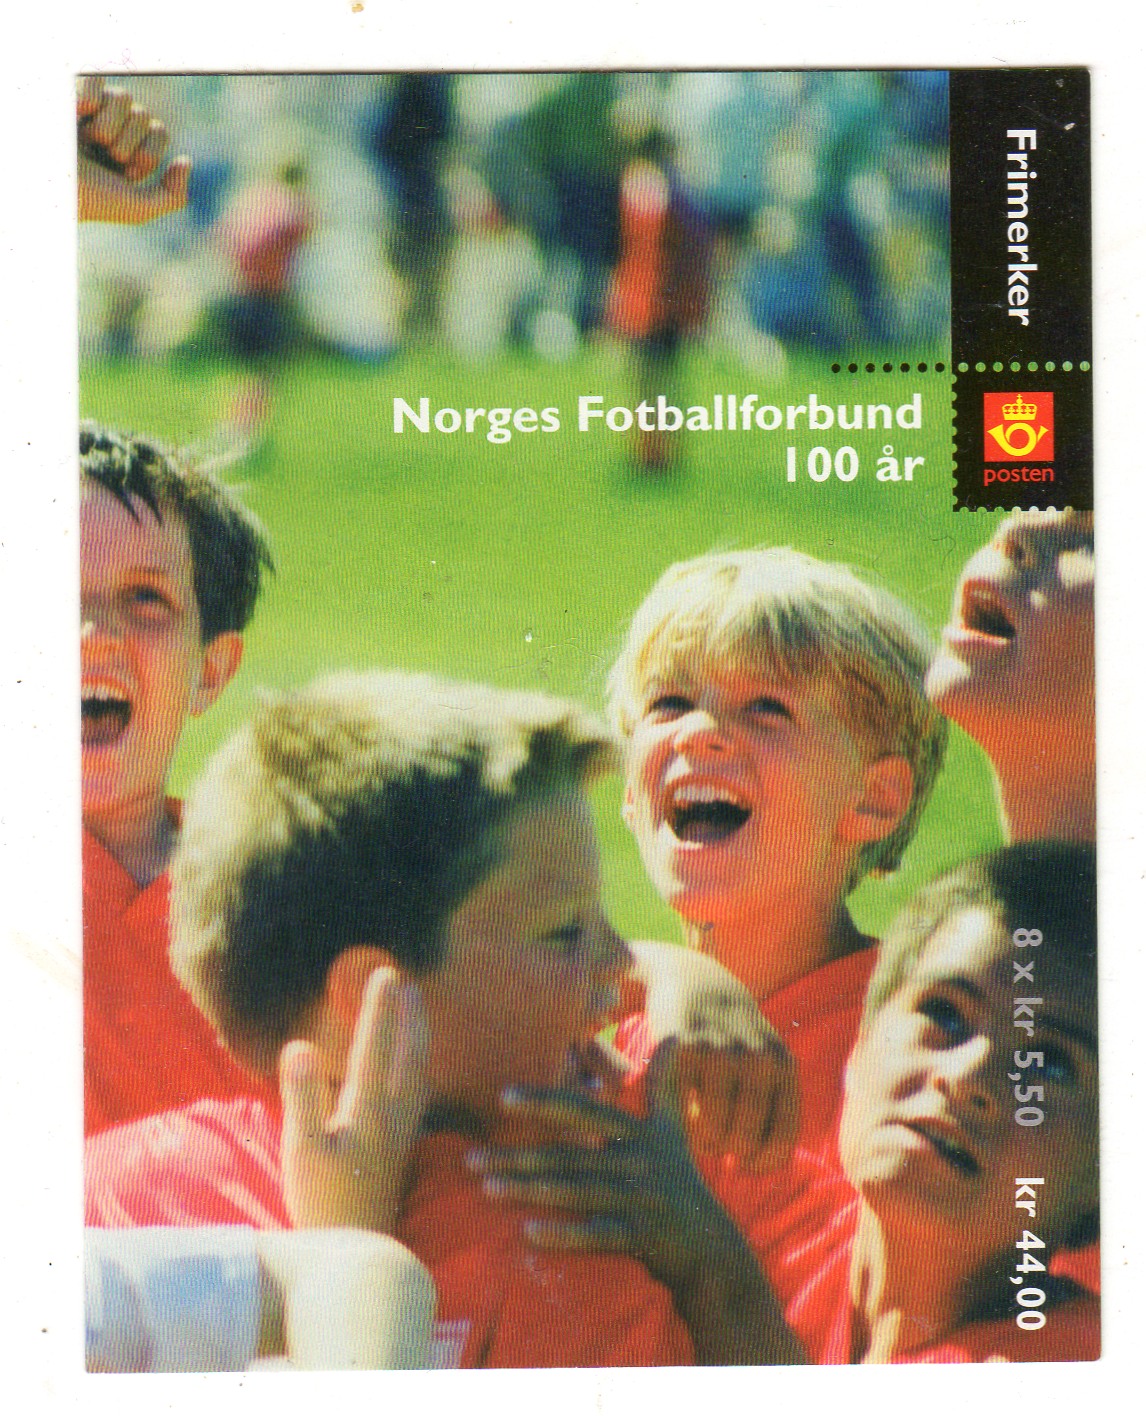 Norges forballforbund 100 år **8*5,50